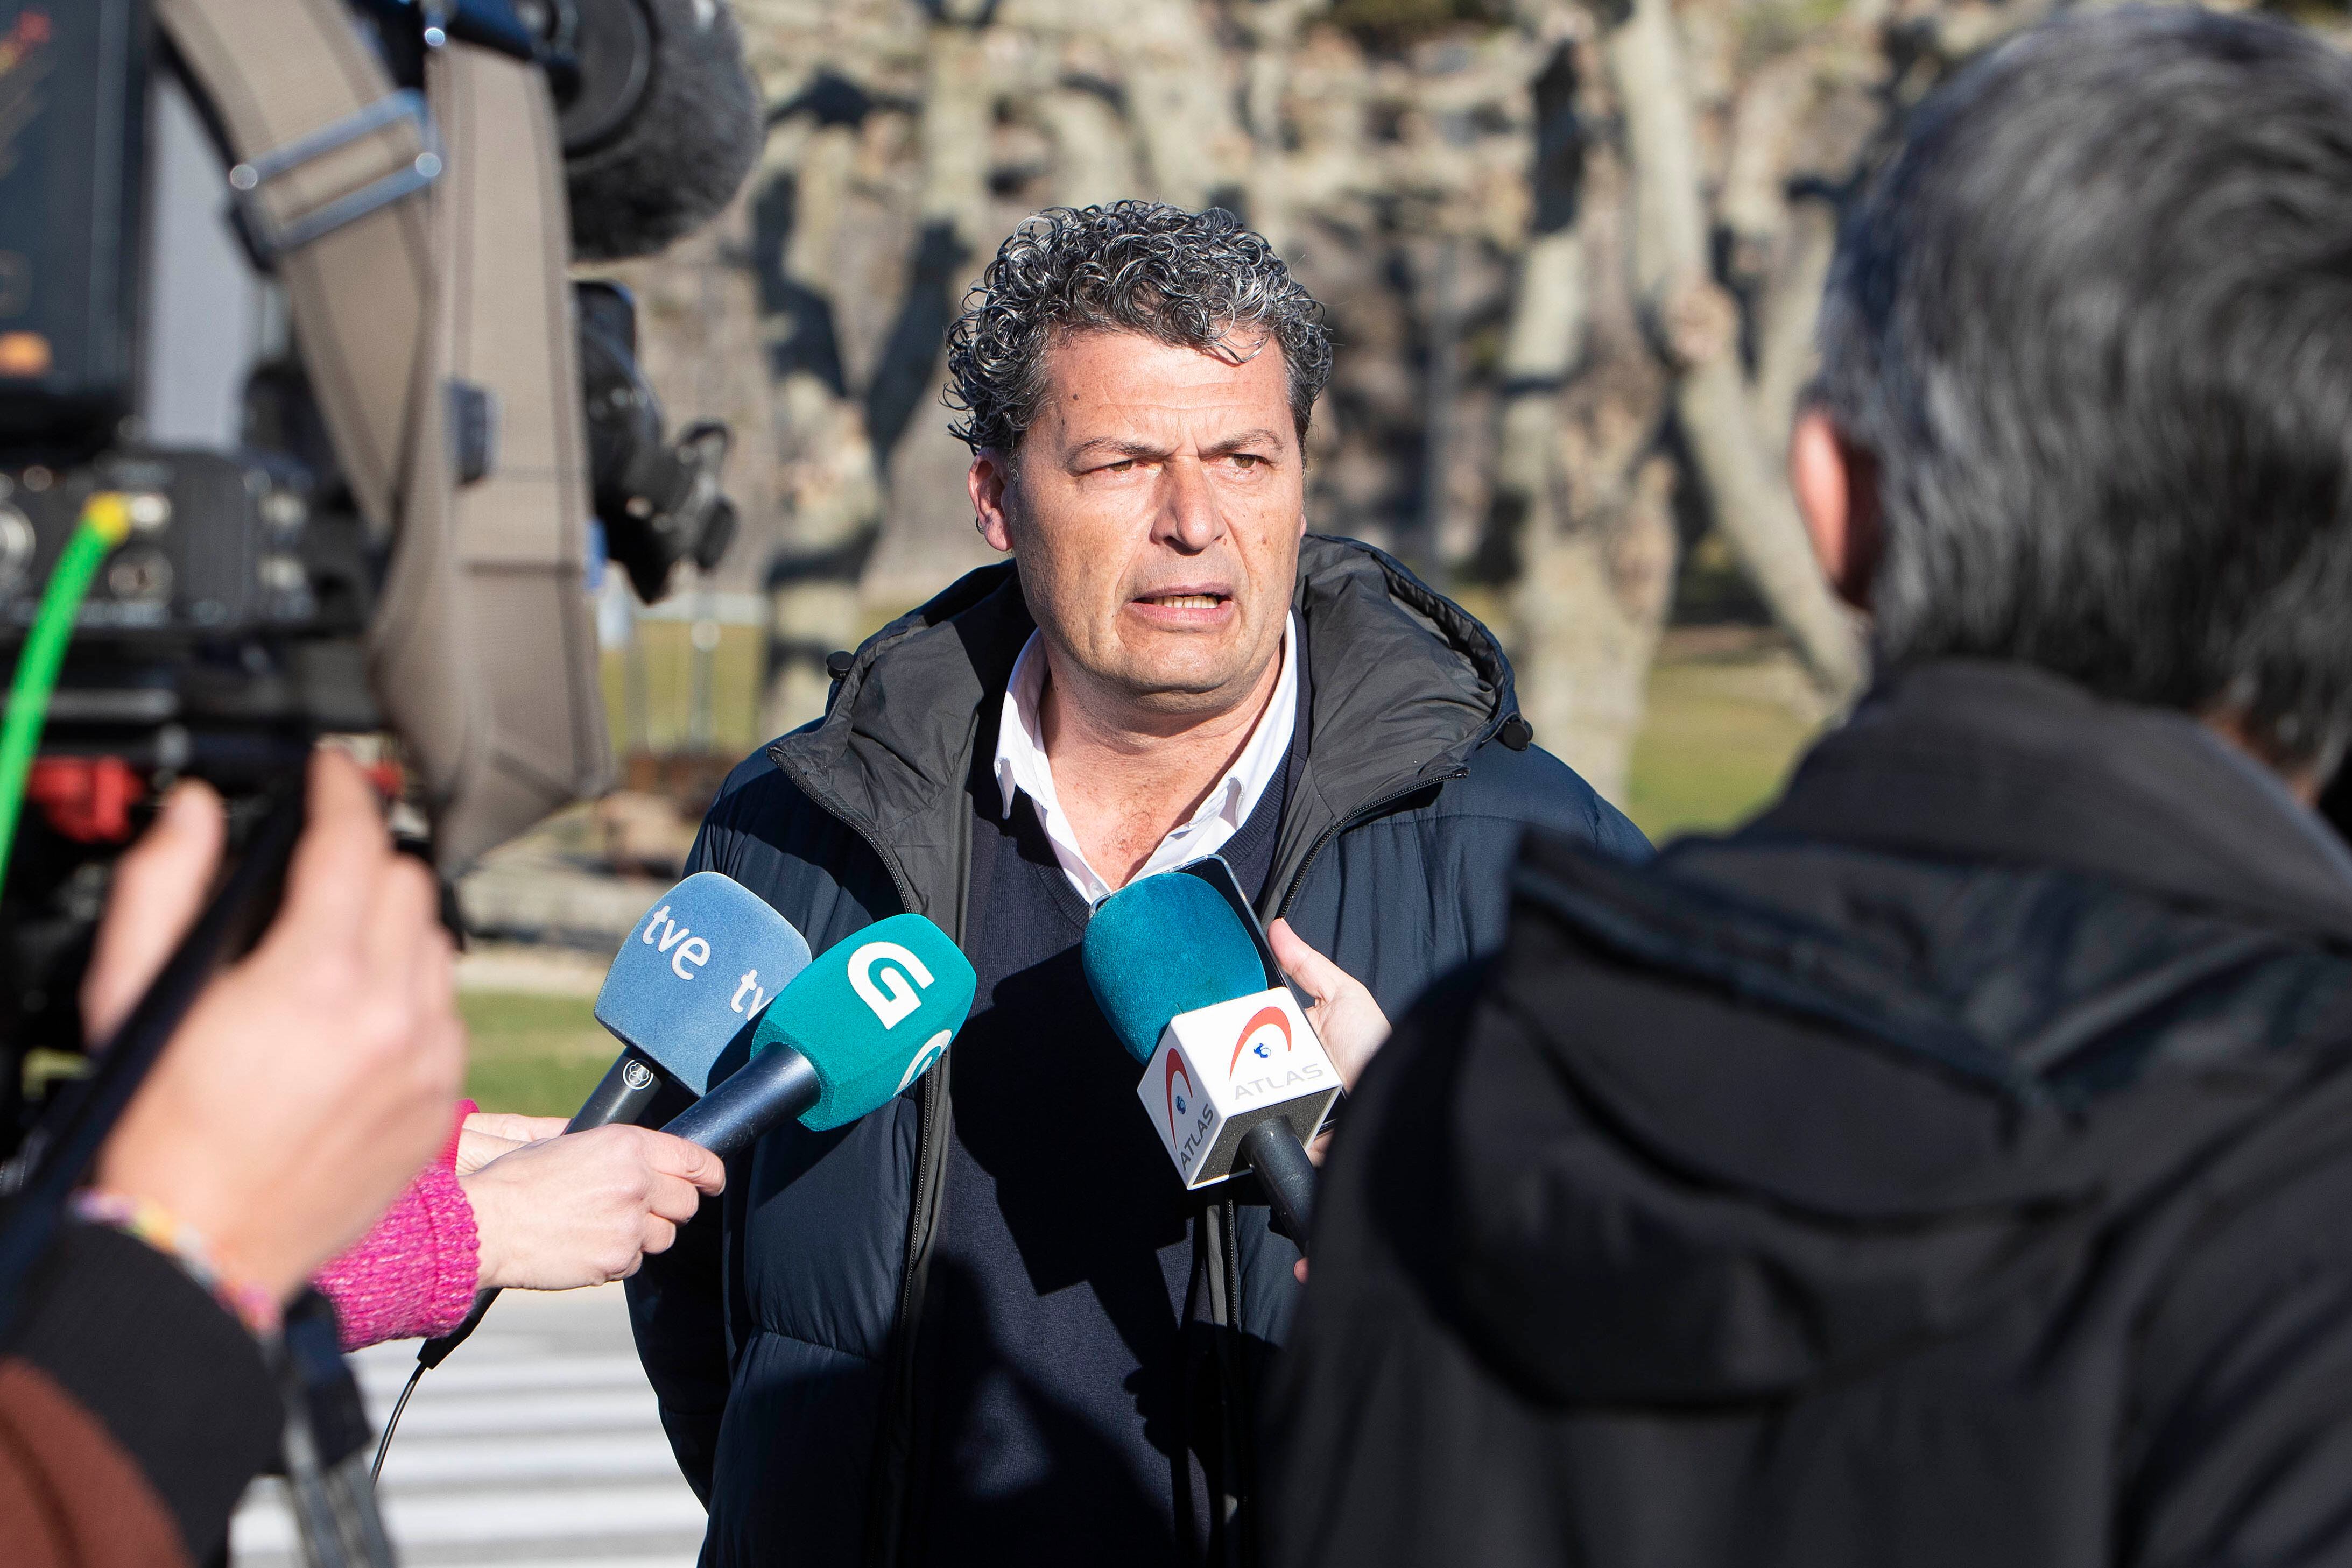 El alcalde de Baiona, Carlos Gómez, atiende a los medios tras el suceso.